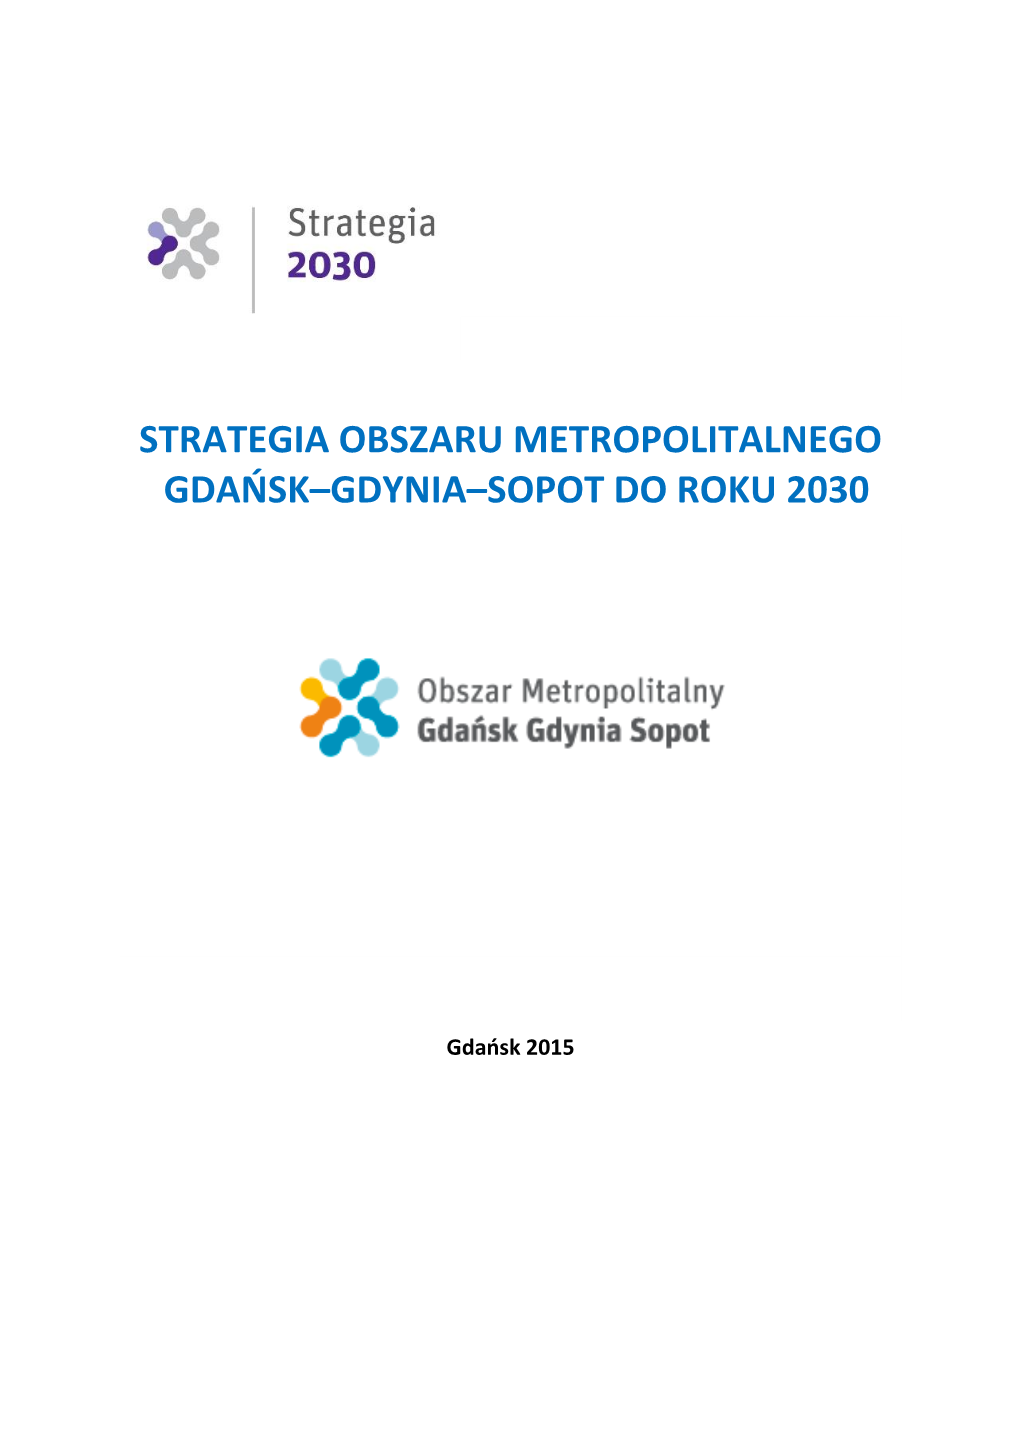 Strategia Obszaru Metropolitalnego Gdańsk-Gdynia-Sopot Do Roku 2030